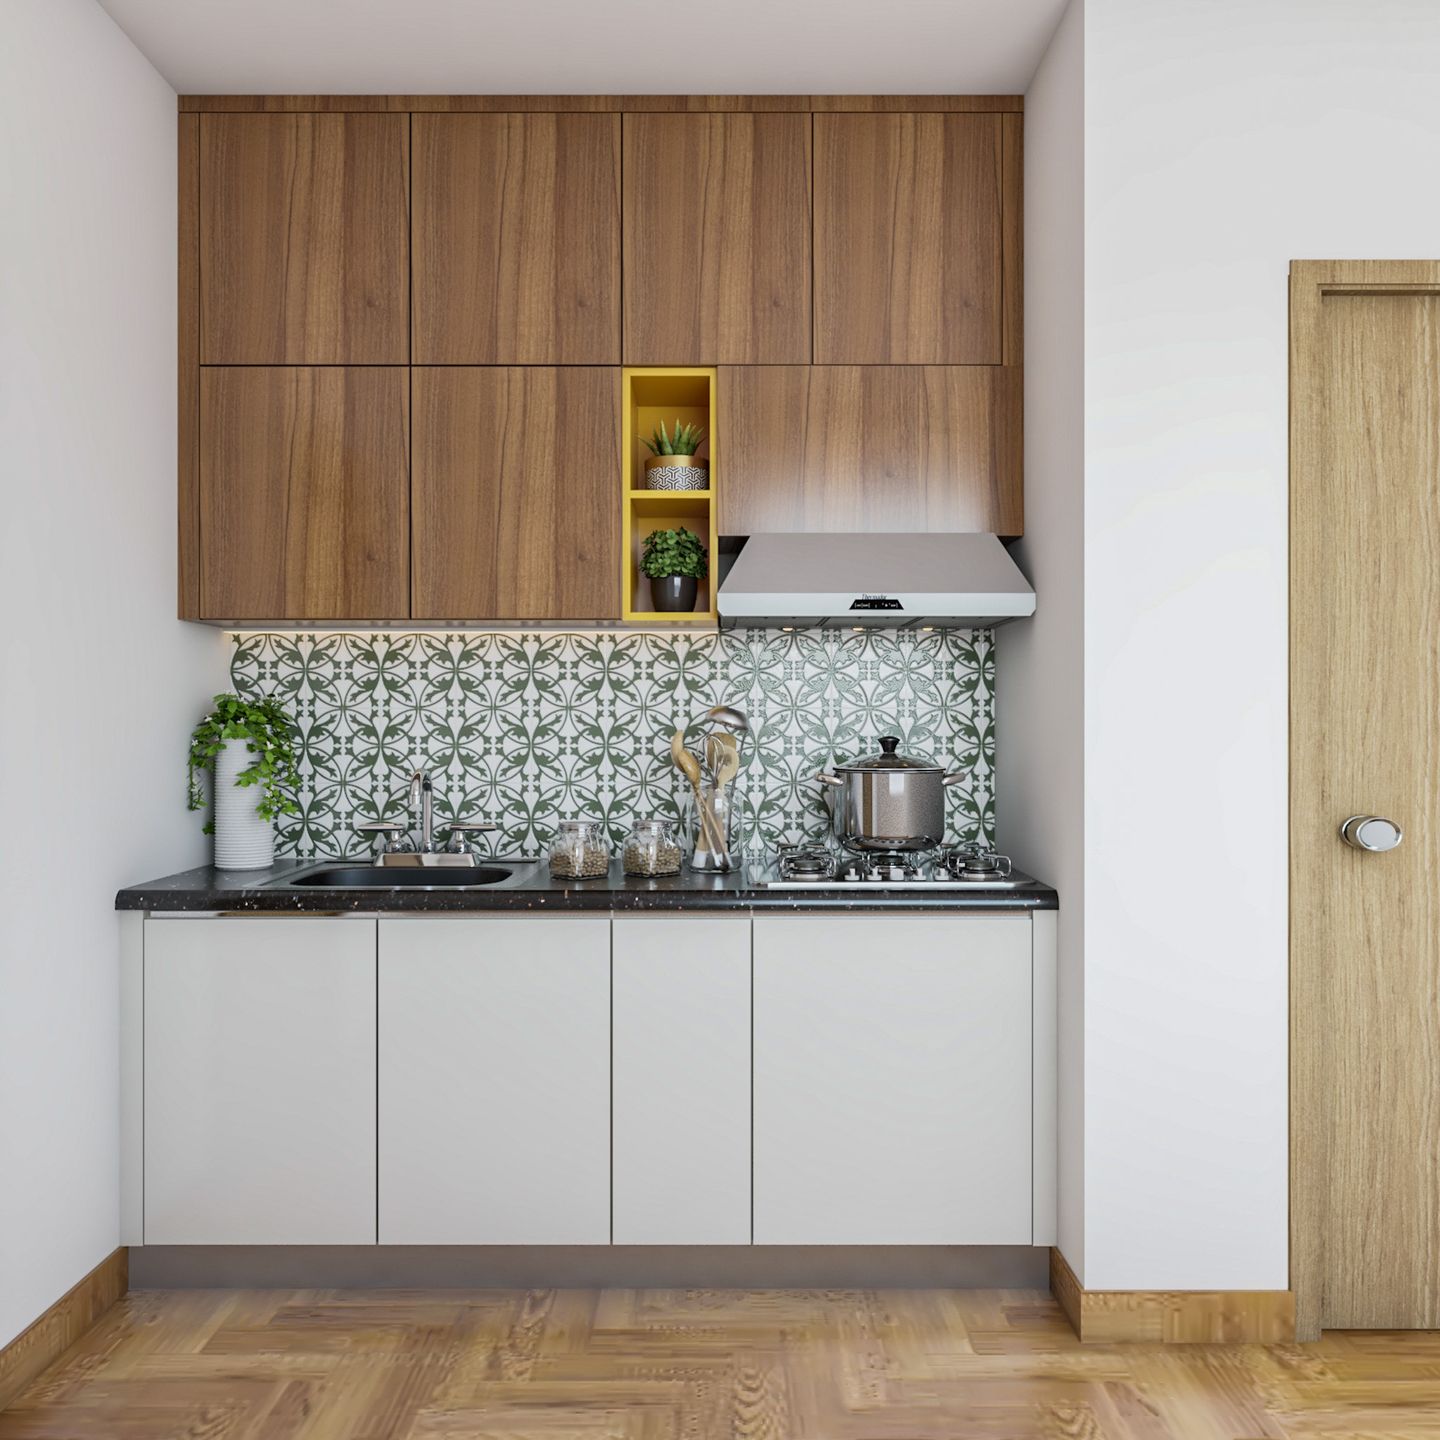 Straight Kitchen Design With Wooden Loft Storage - Livspace